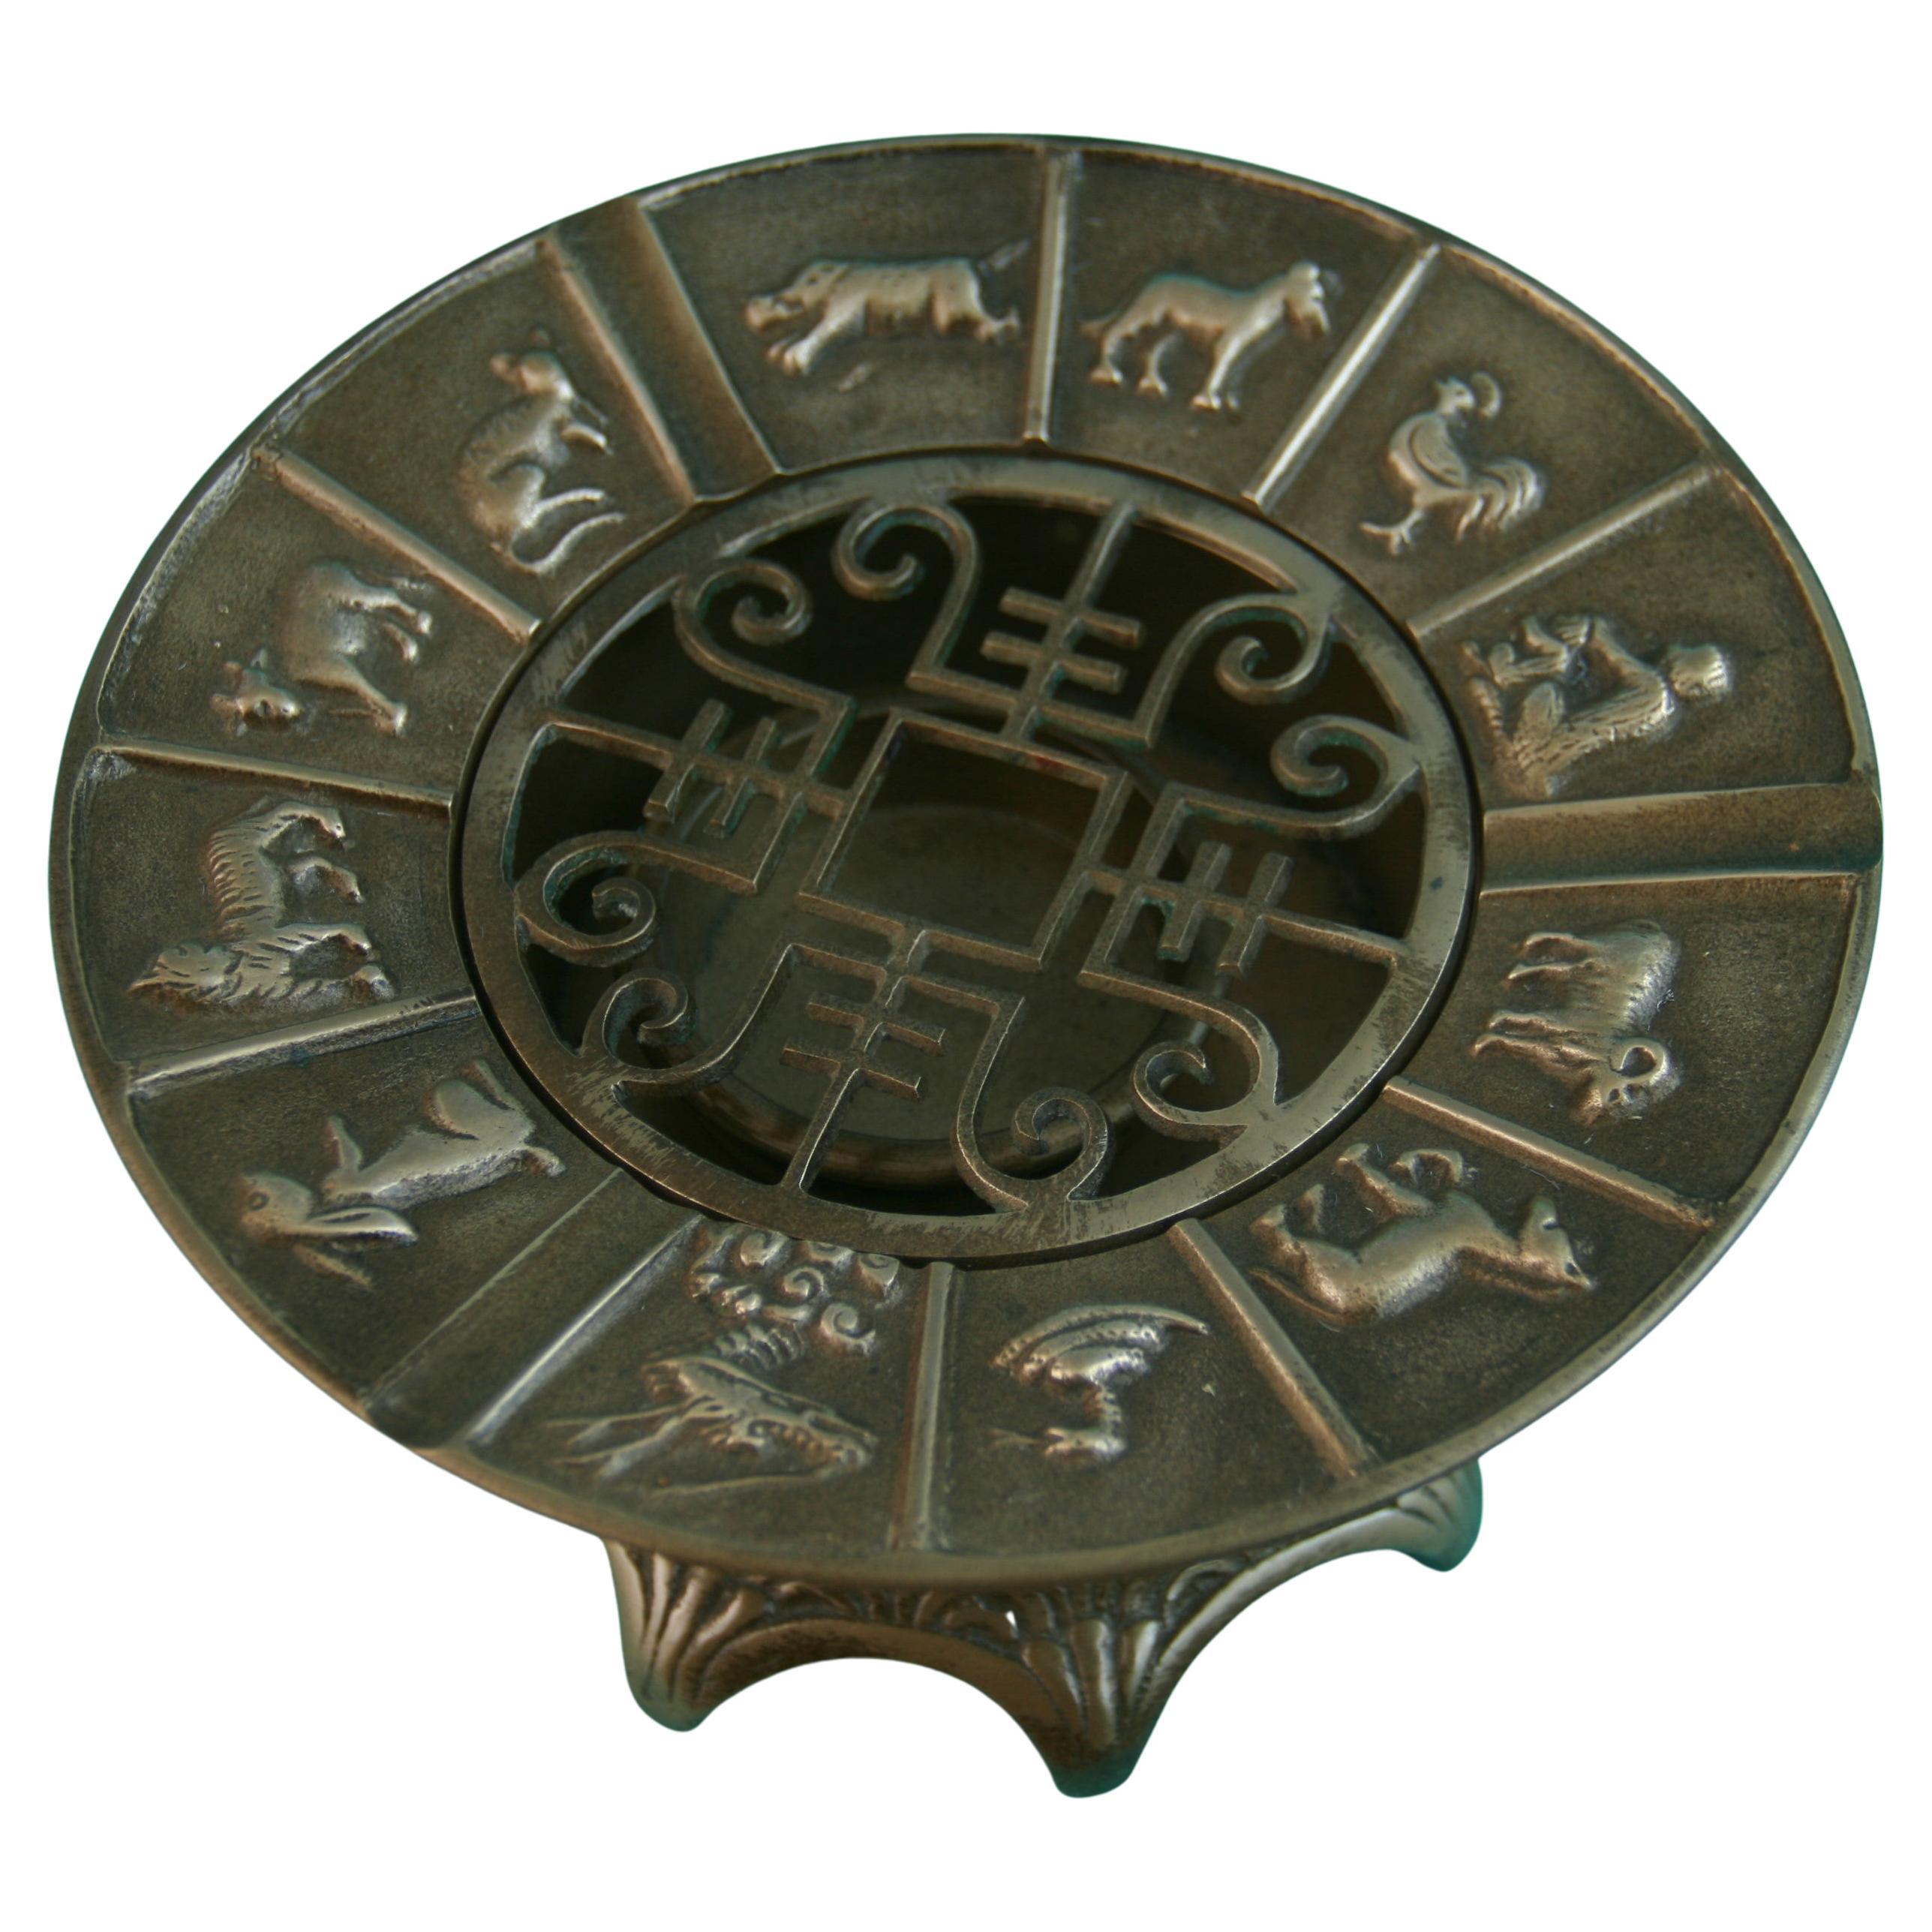 Chinesisches Räuchergefäß aus Bronze mit Tierkreiszeichen